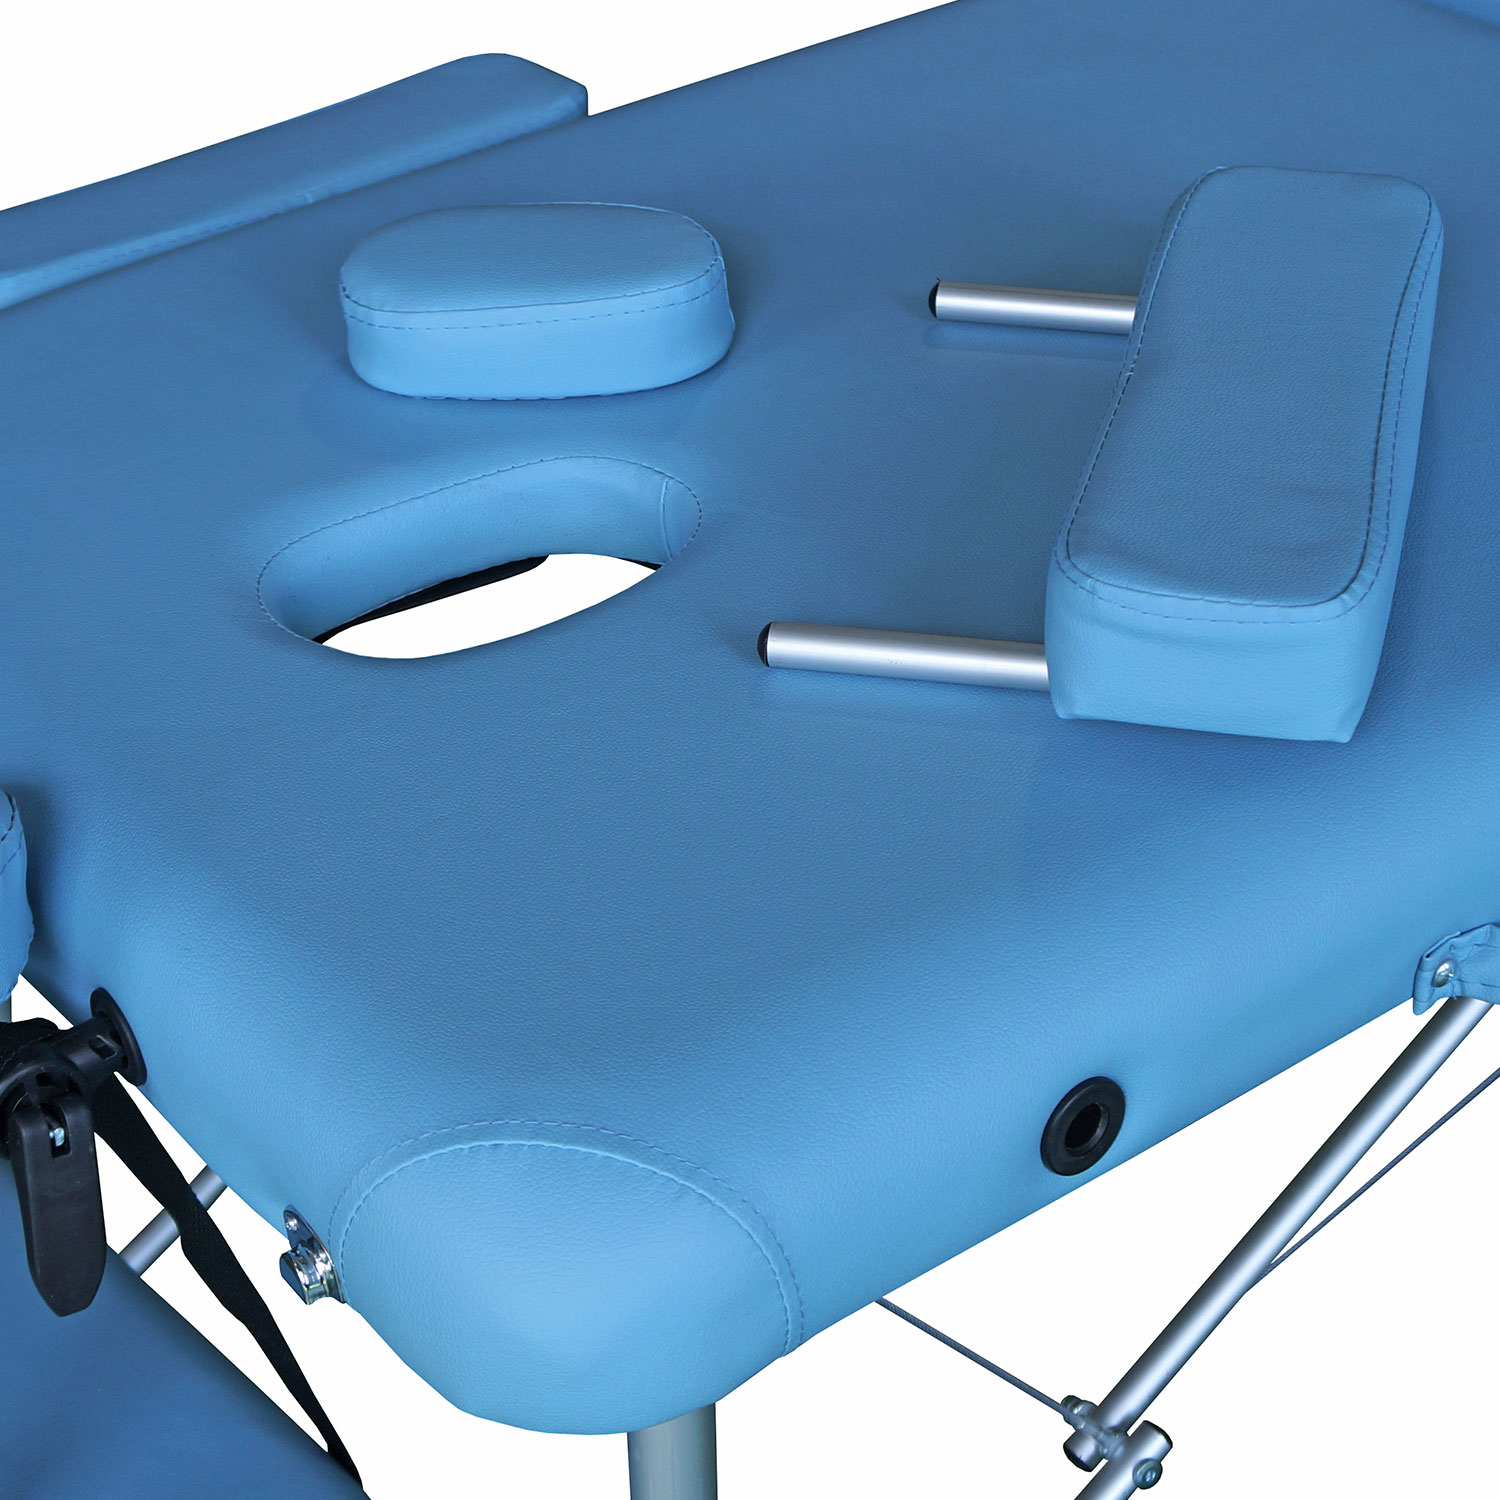 Складной массажный стол DFC NIRVANA, Elegant LUXE, светло-голубой